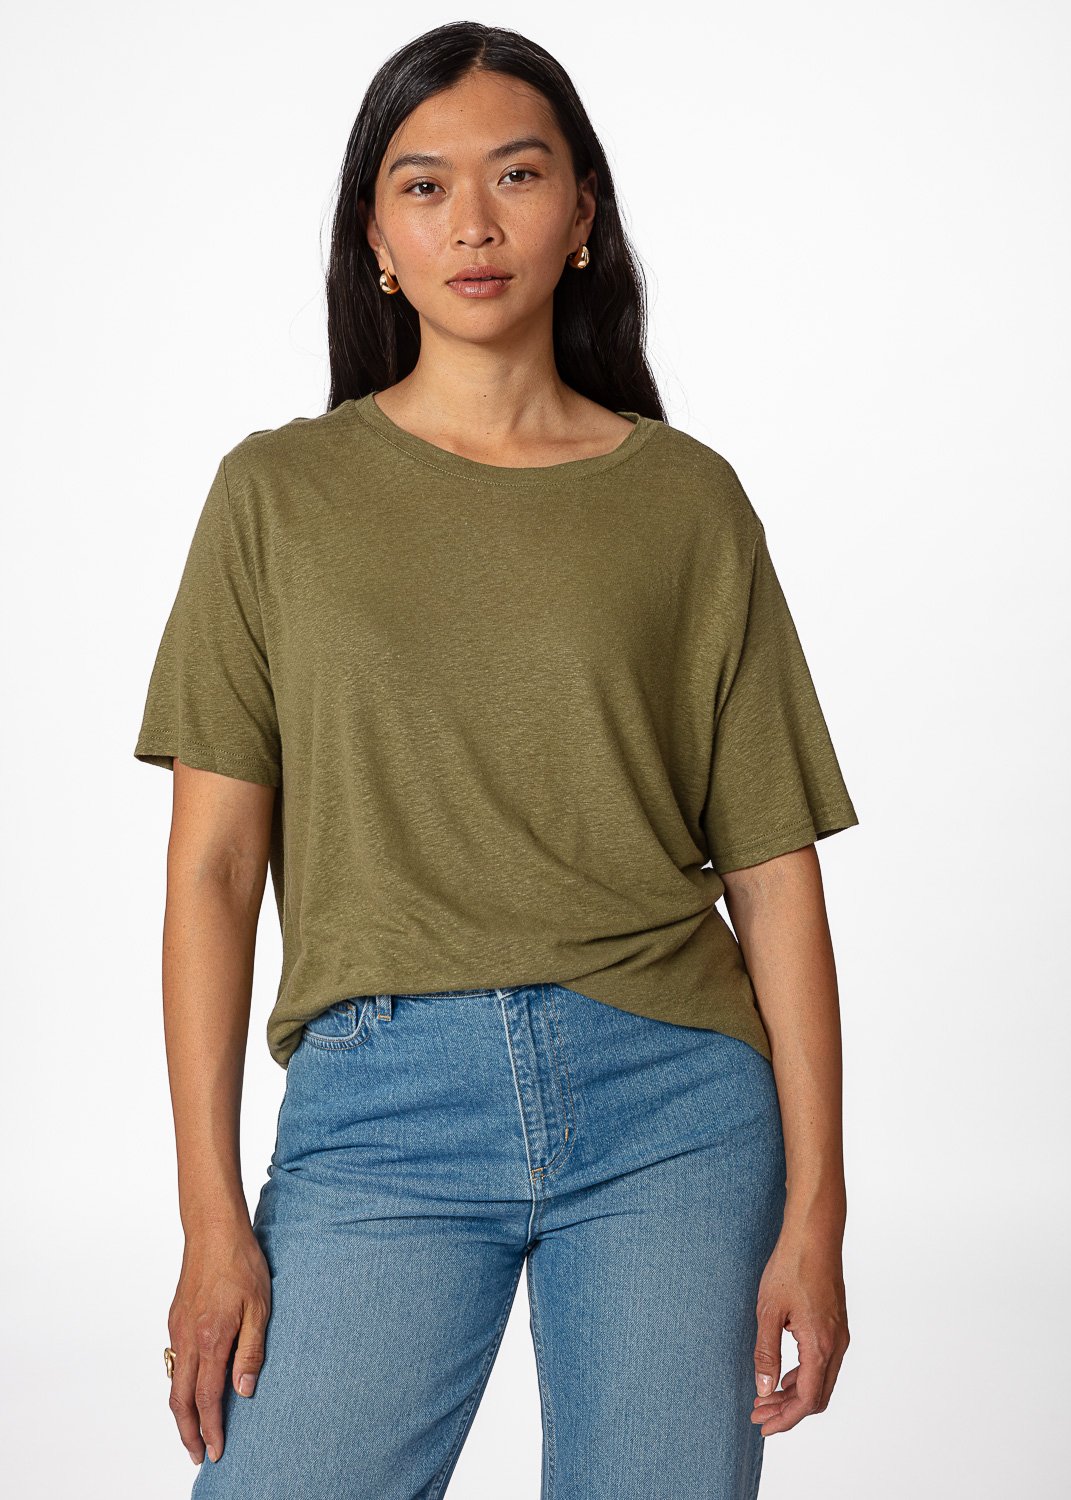 Green linen blend t-shirt